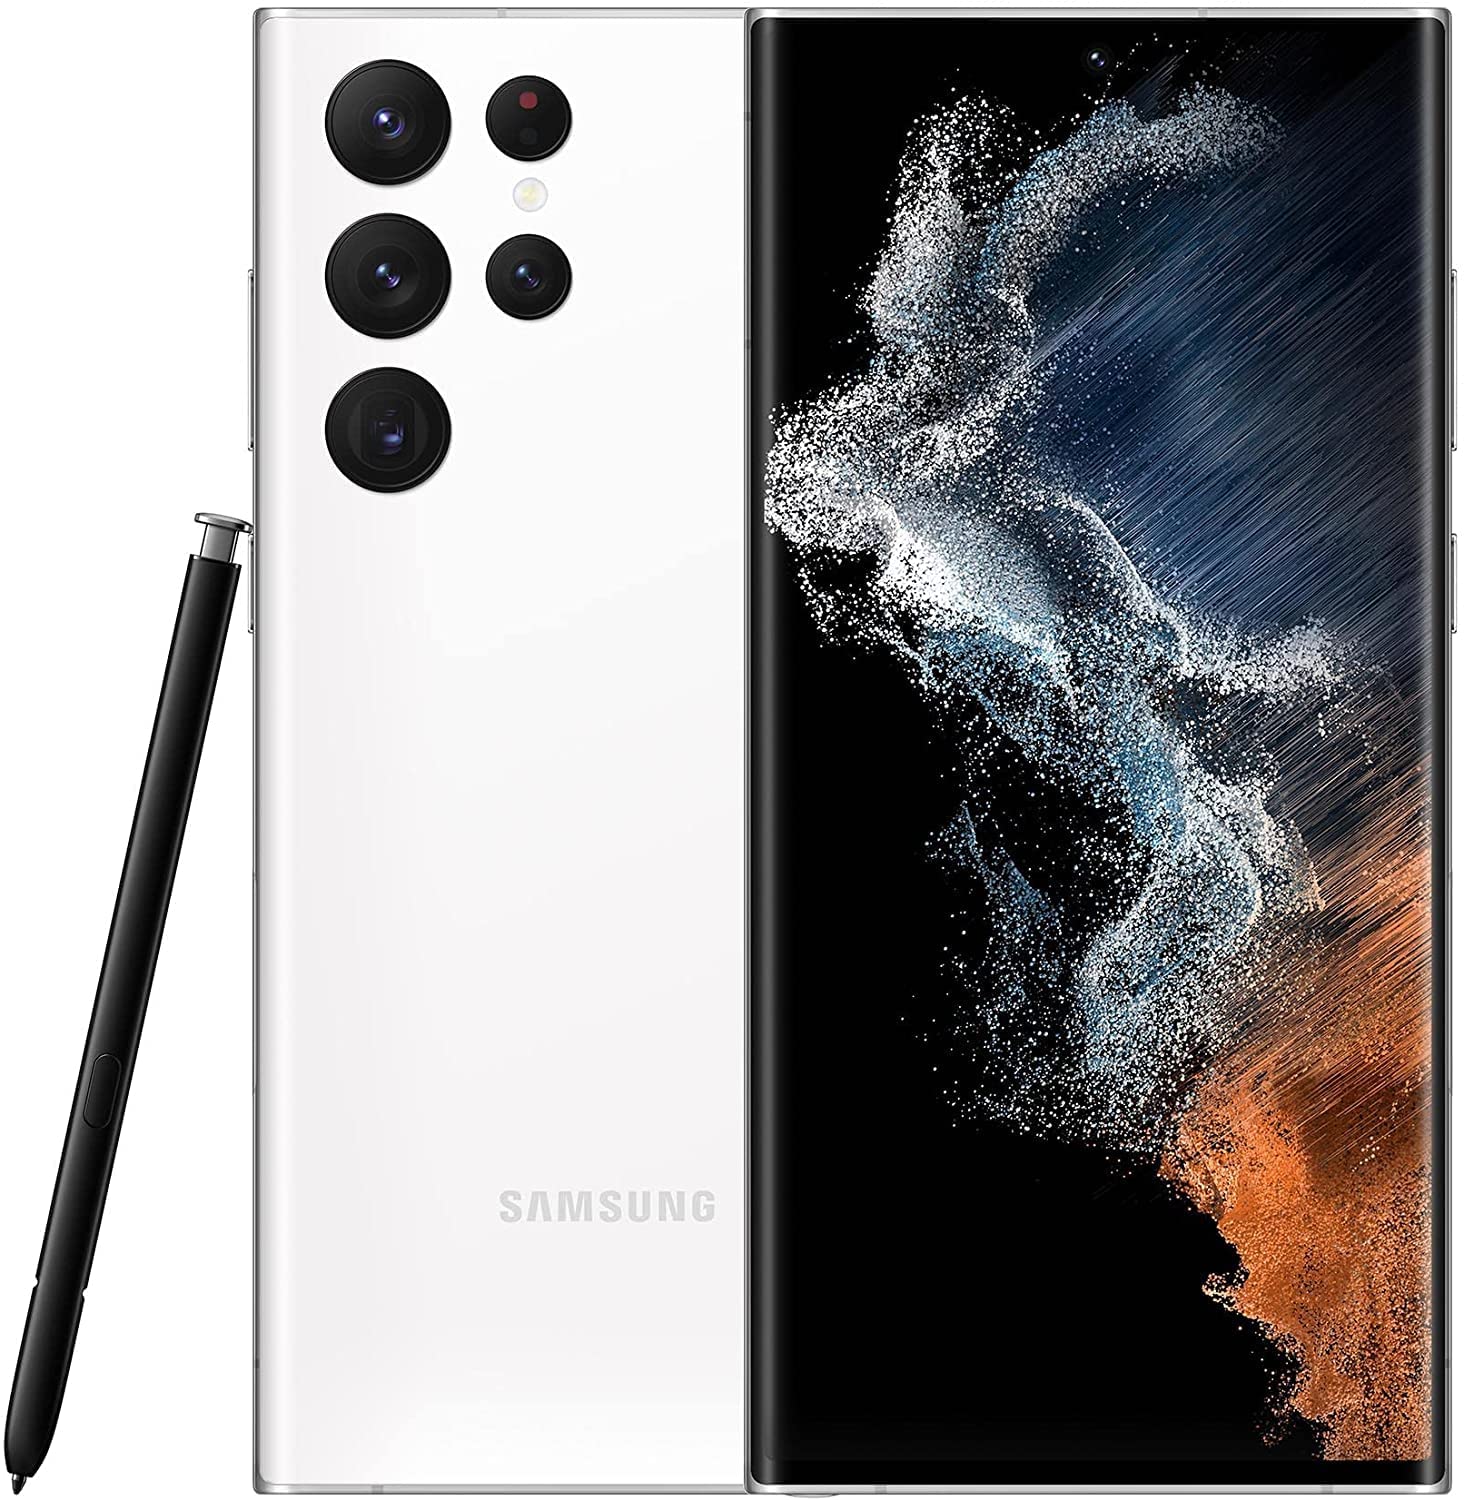 Samsung Galaxy S22 Ultra 2022